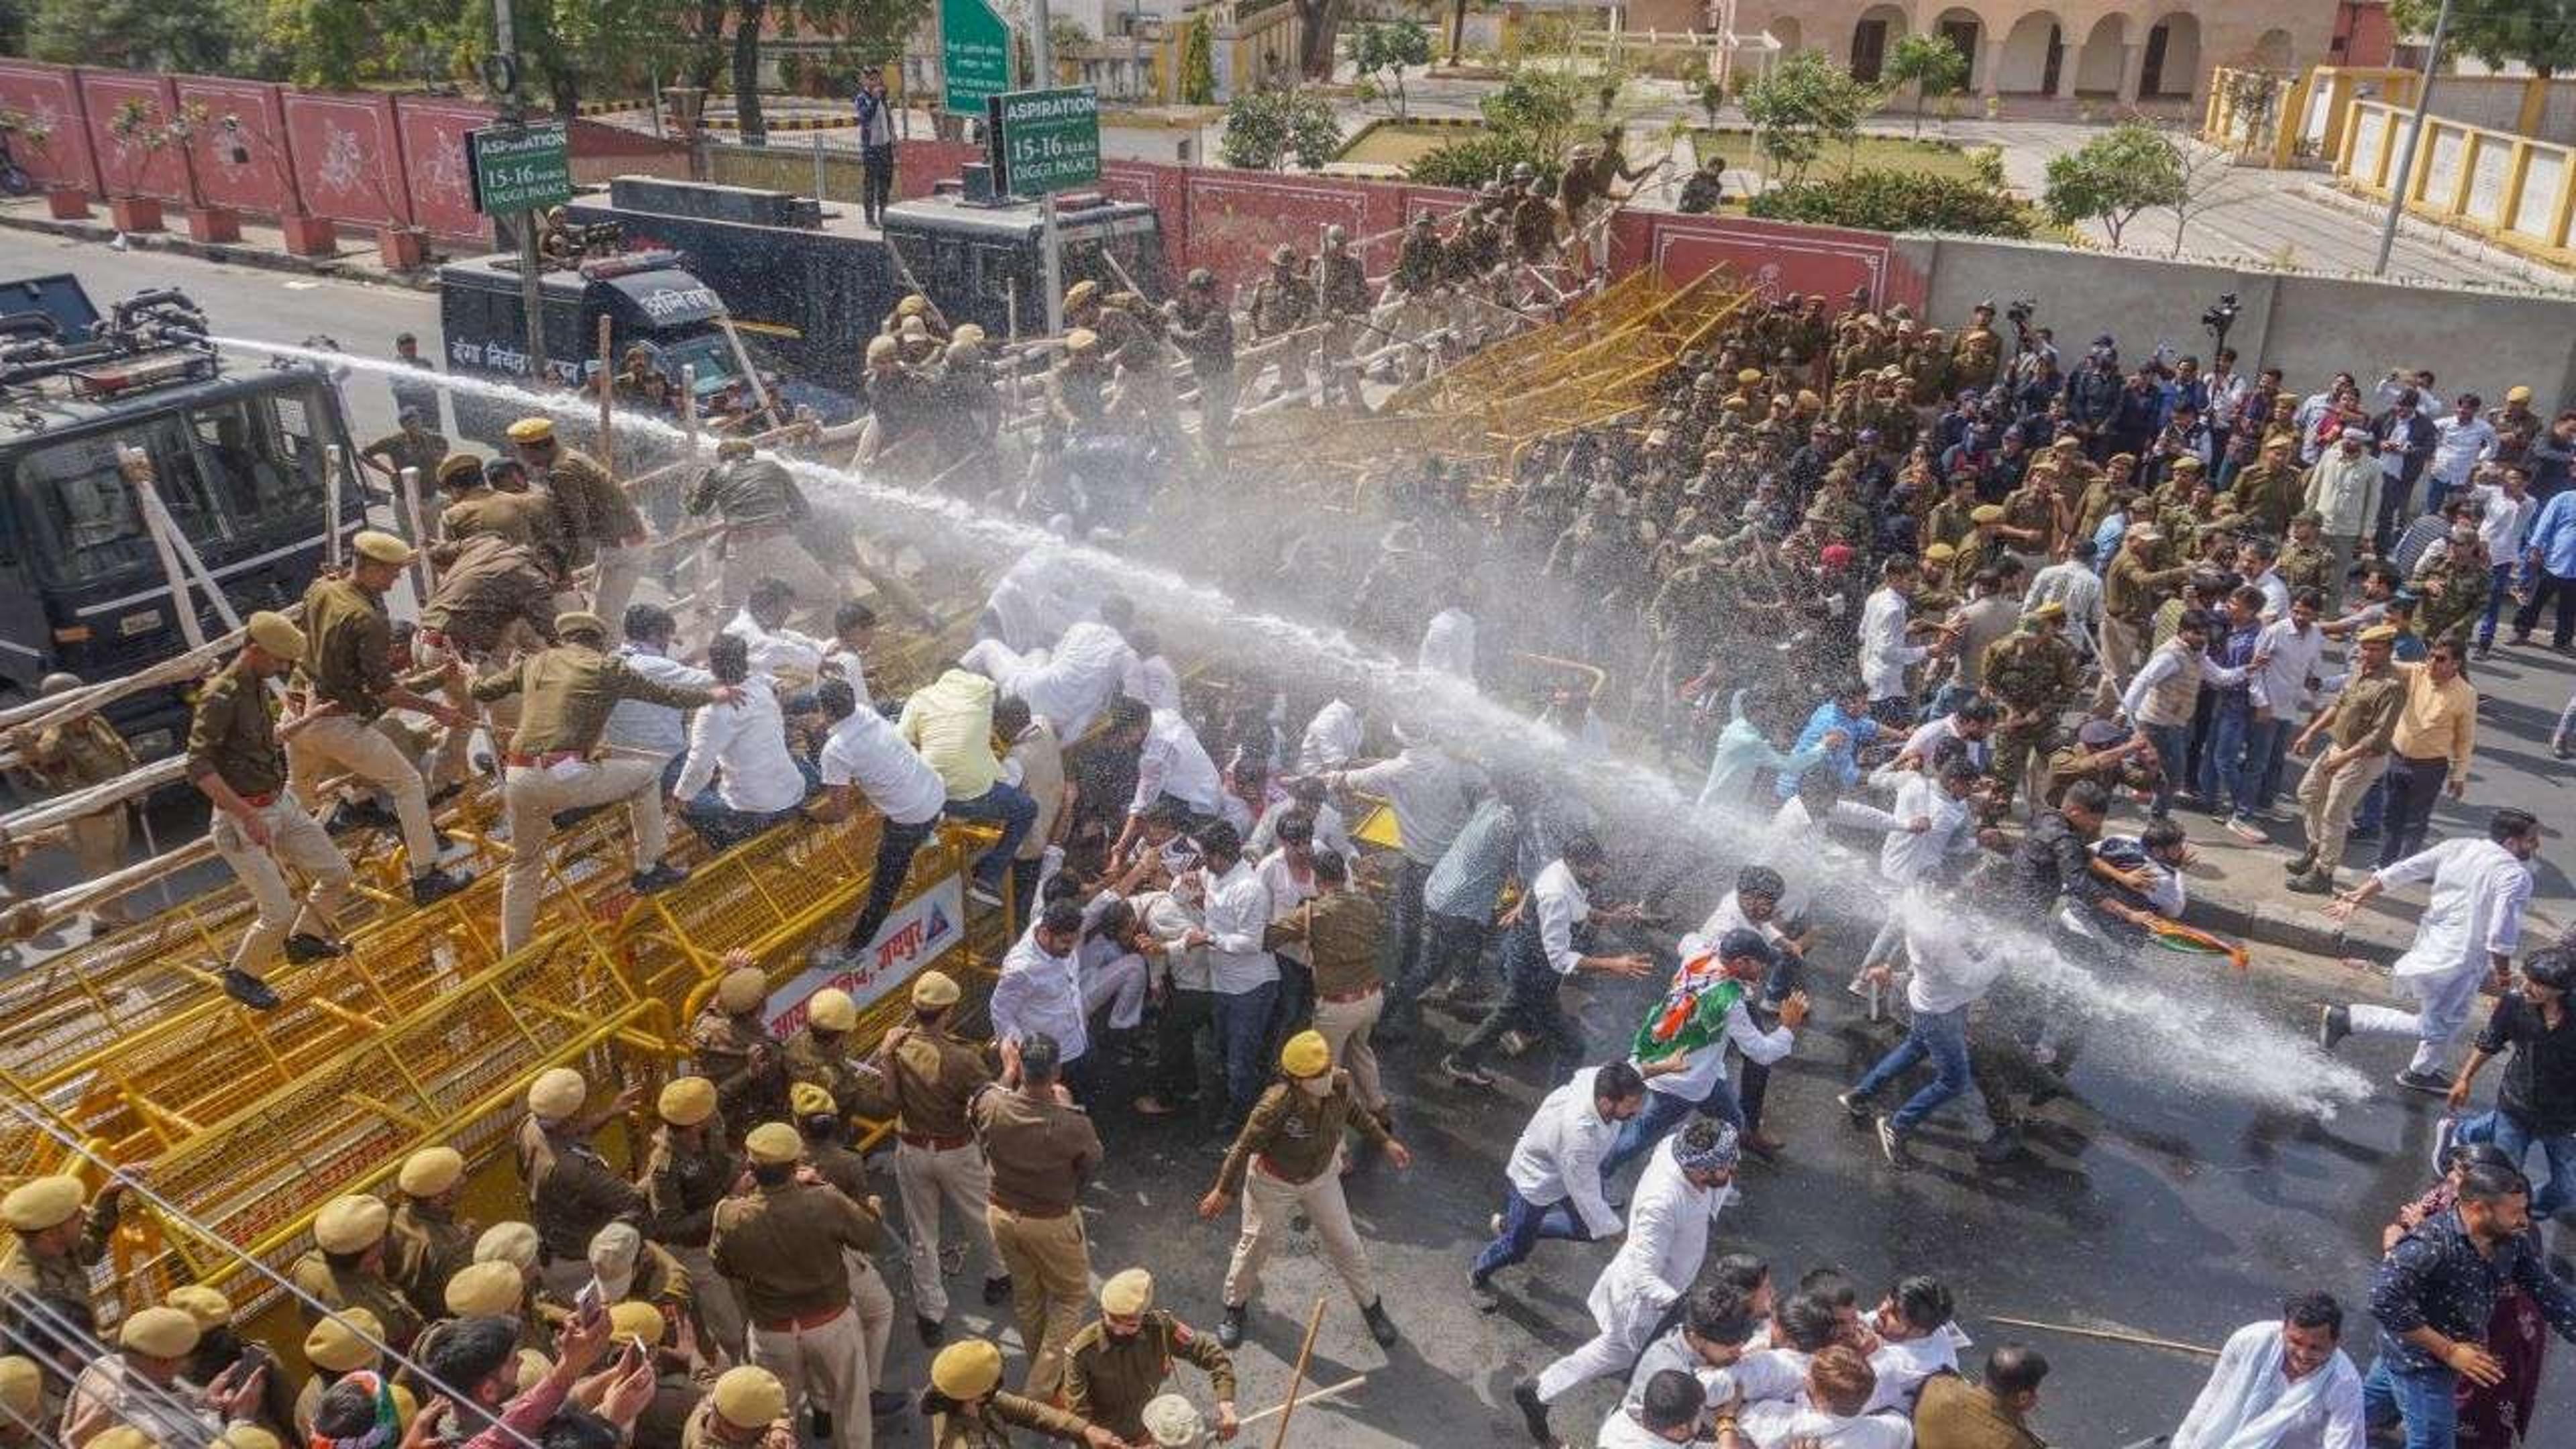 ऊपर पानी नीचे लाठी। जयपुर में यूथ कांग्रेस के प्रदर्शन पर पुलिस ने किया लाठीचार्ज। देखें तस्वीरें।